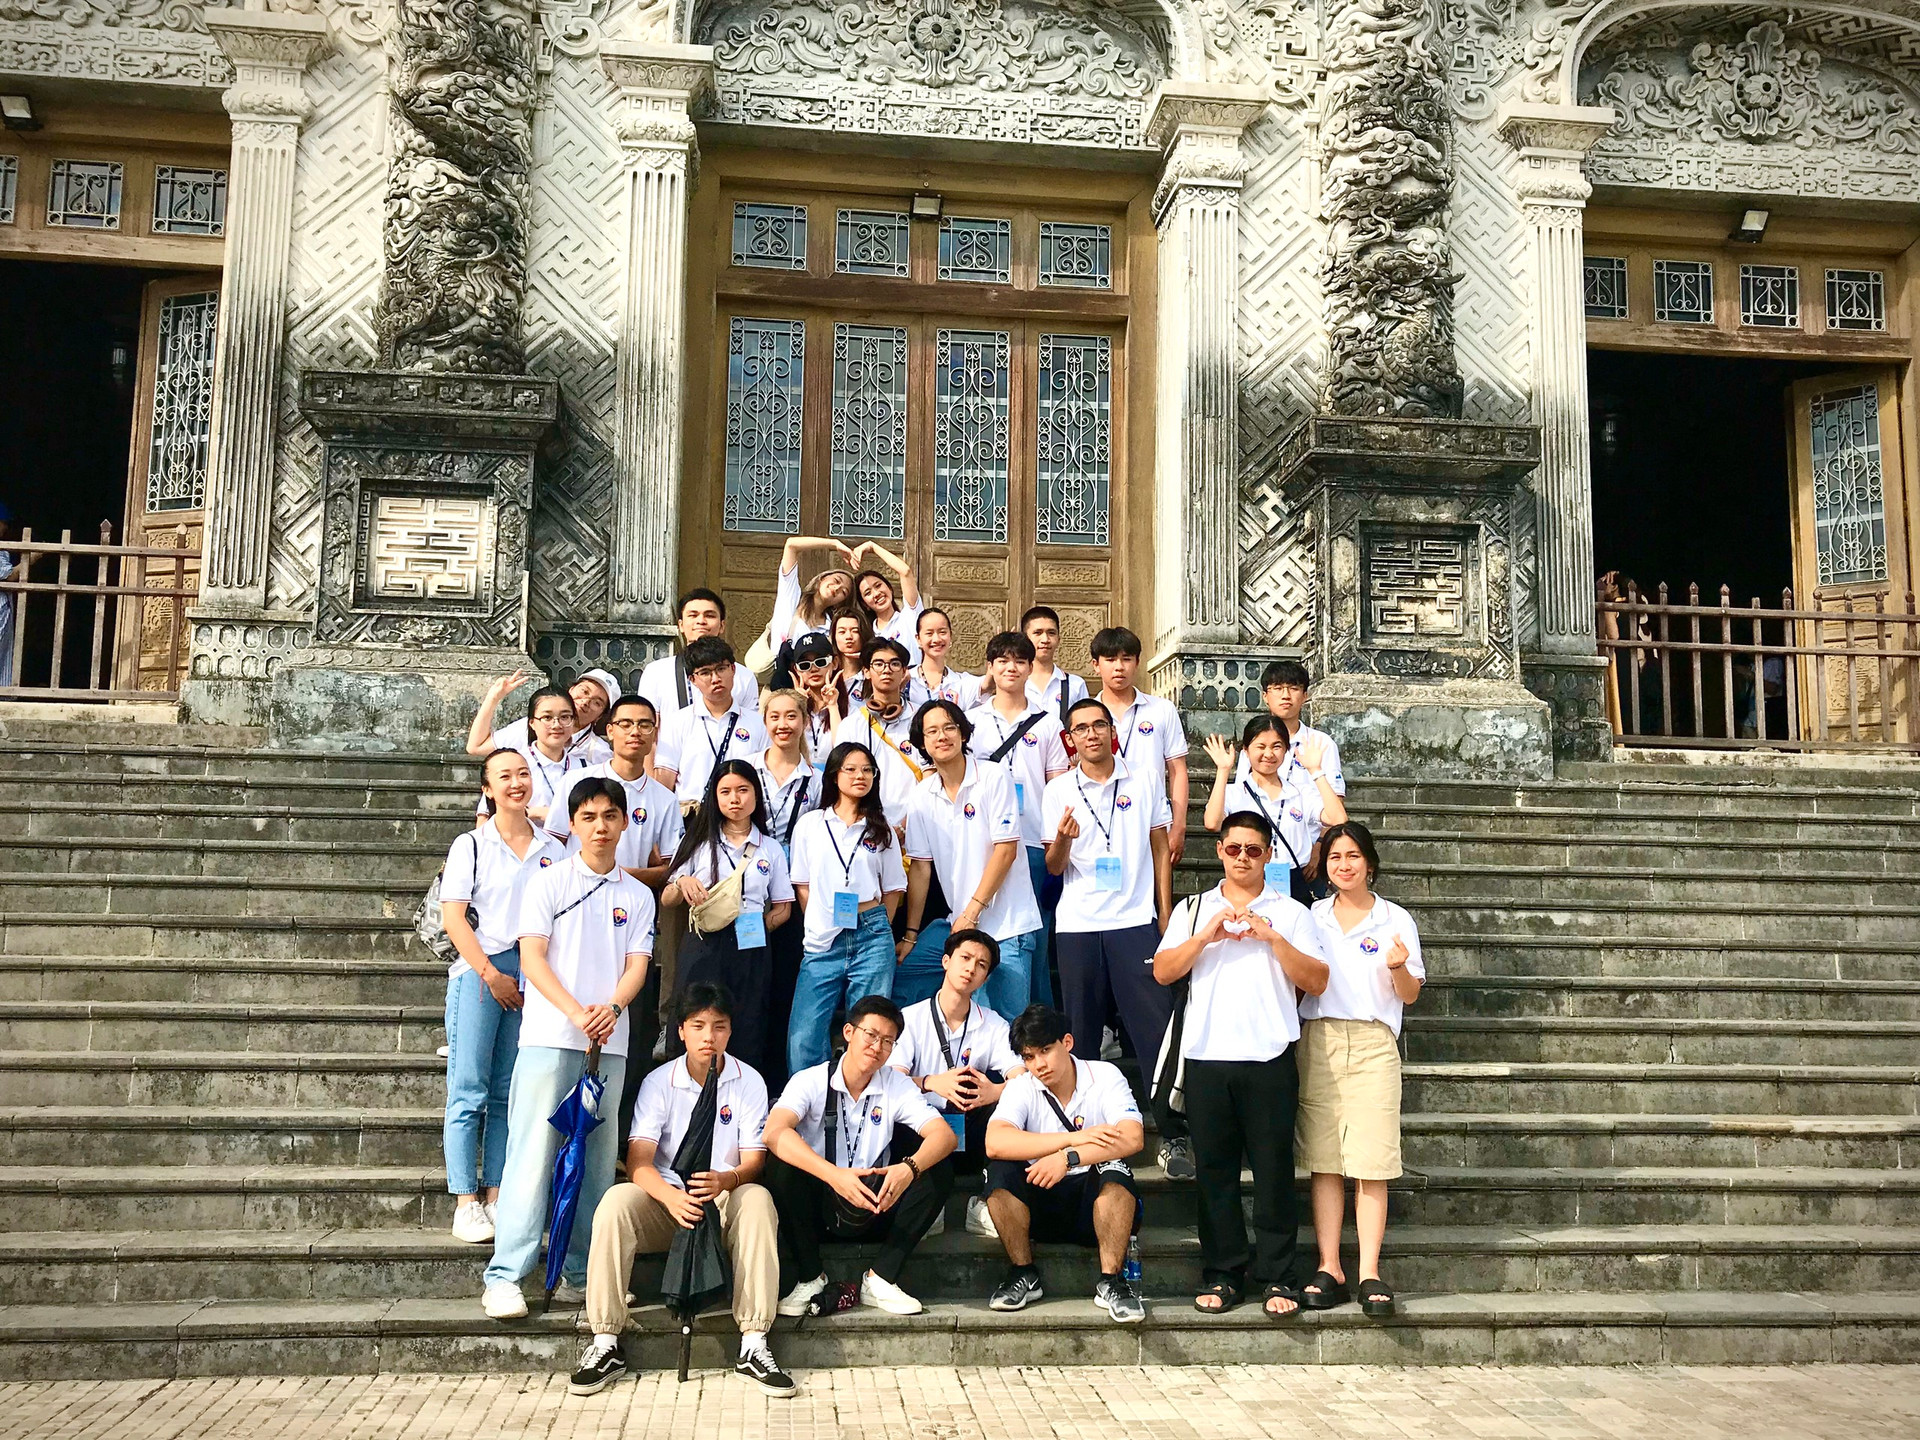 Tuổi trẻ kiều bào khám phá những kiến trúc độc đáo của lăng tẩm nhà Nguyễn tại Huế - ảnh 1